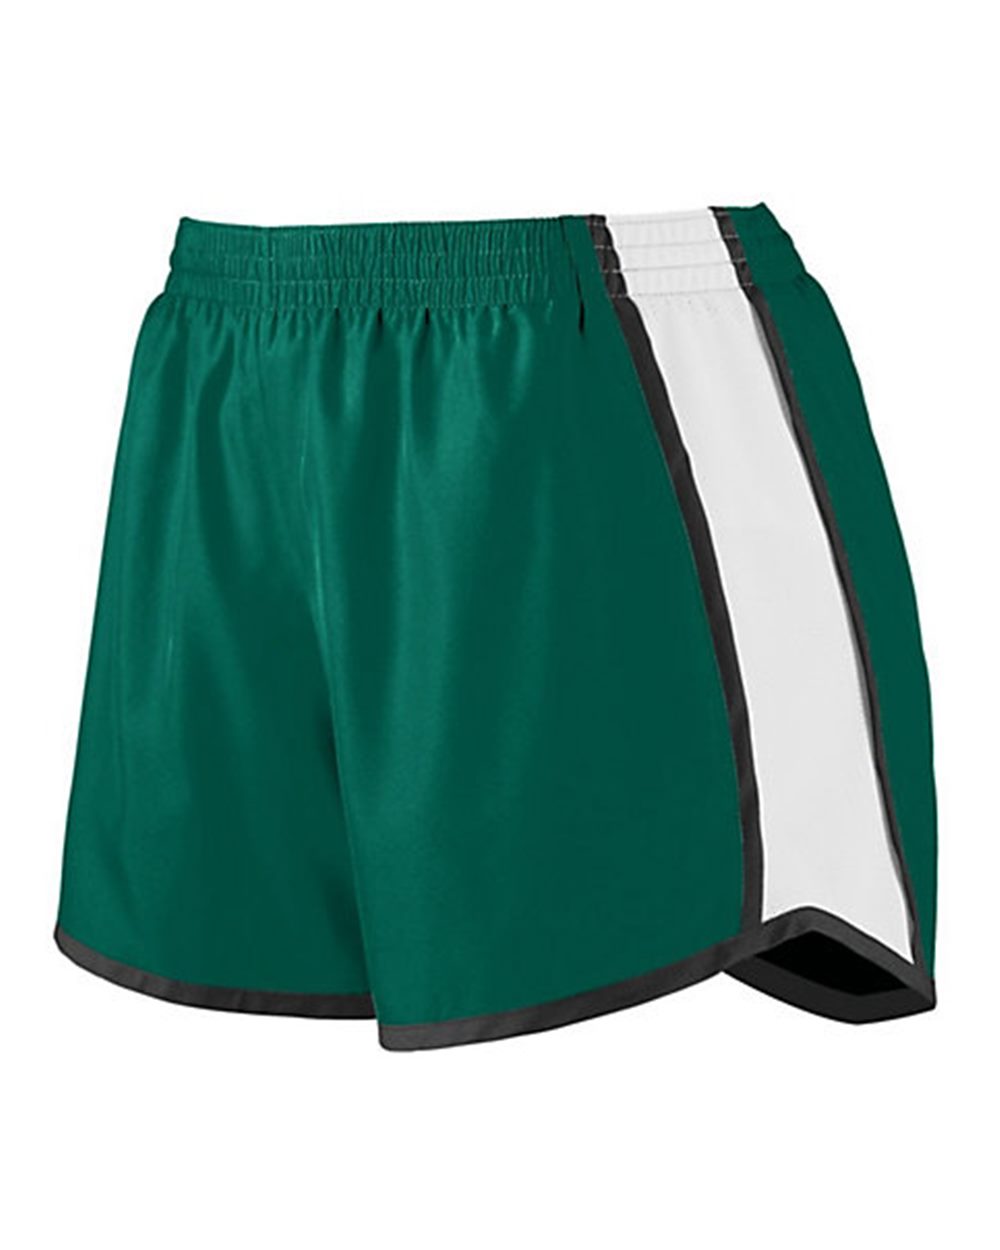 Girls Pulse Team Shorts, Green/White